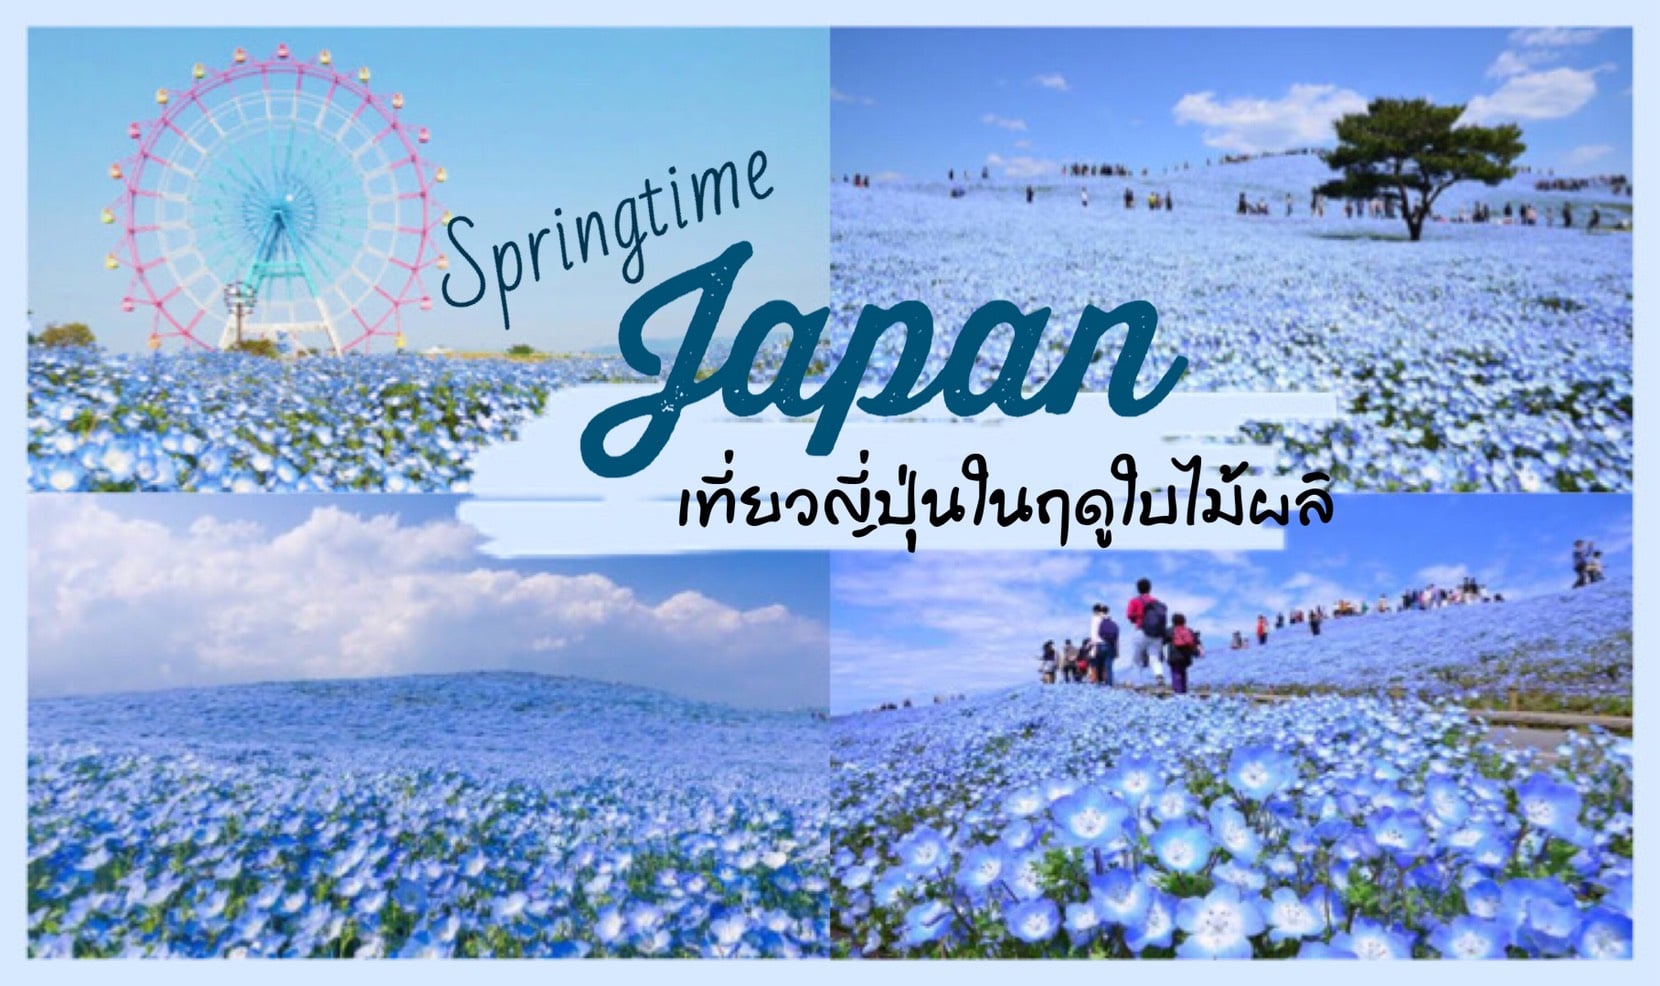 ทัวร์ญี่ปุ่น – เที่ยวญี่ปุ่นในฤดูใบไม้ผลิ นั้นมีอะไรดี ที่ทำให้คุณนั้นต้องอยากไป!